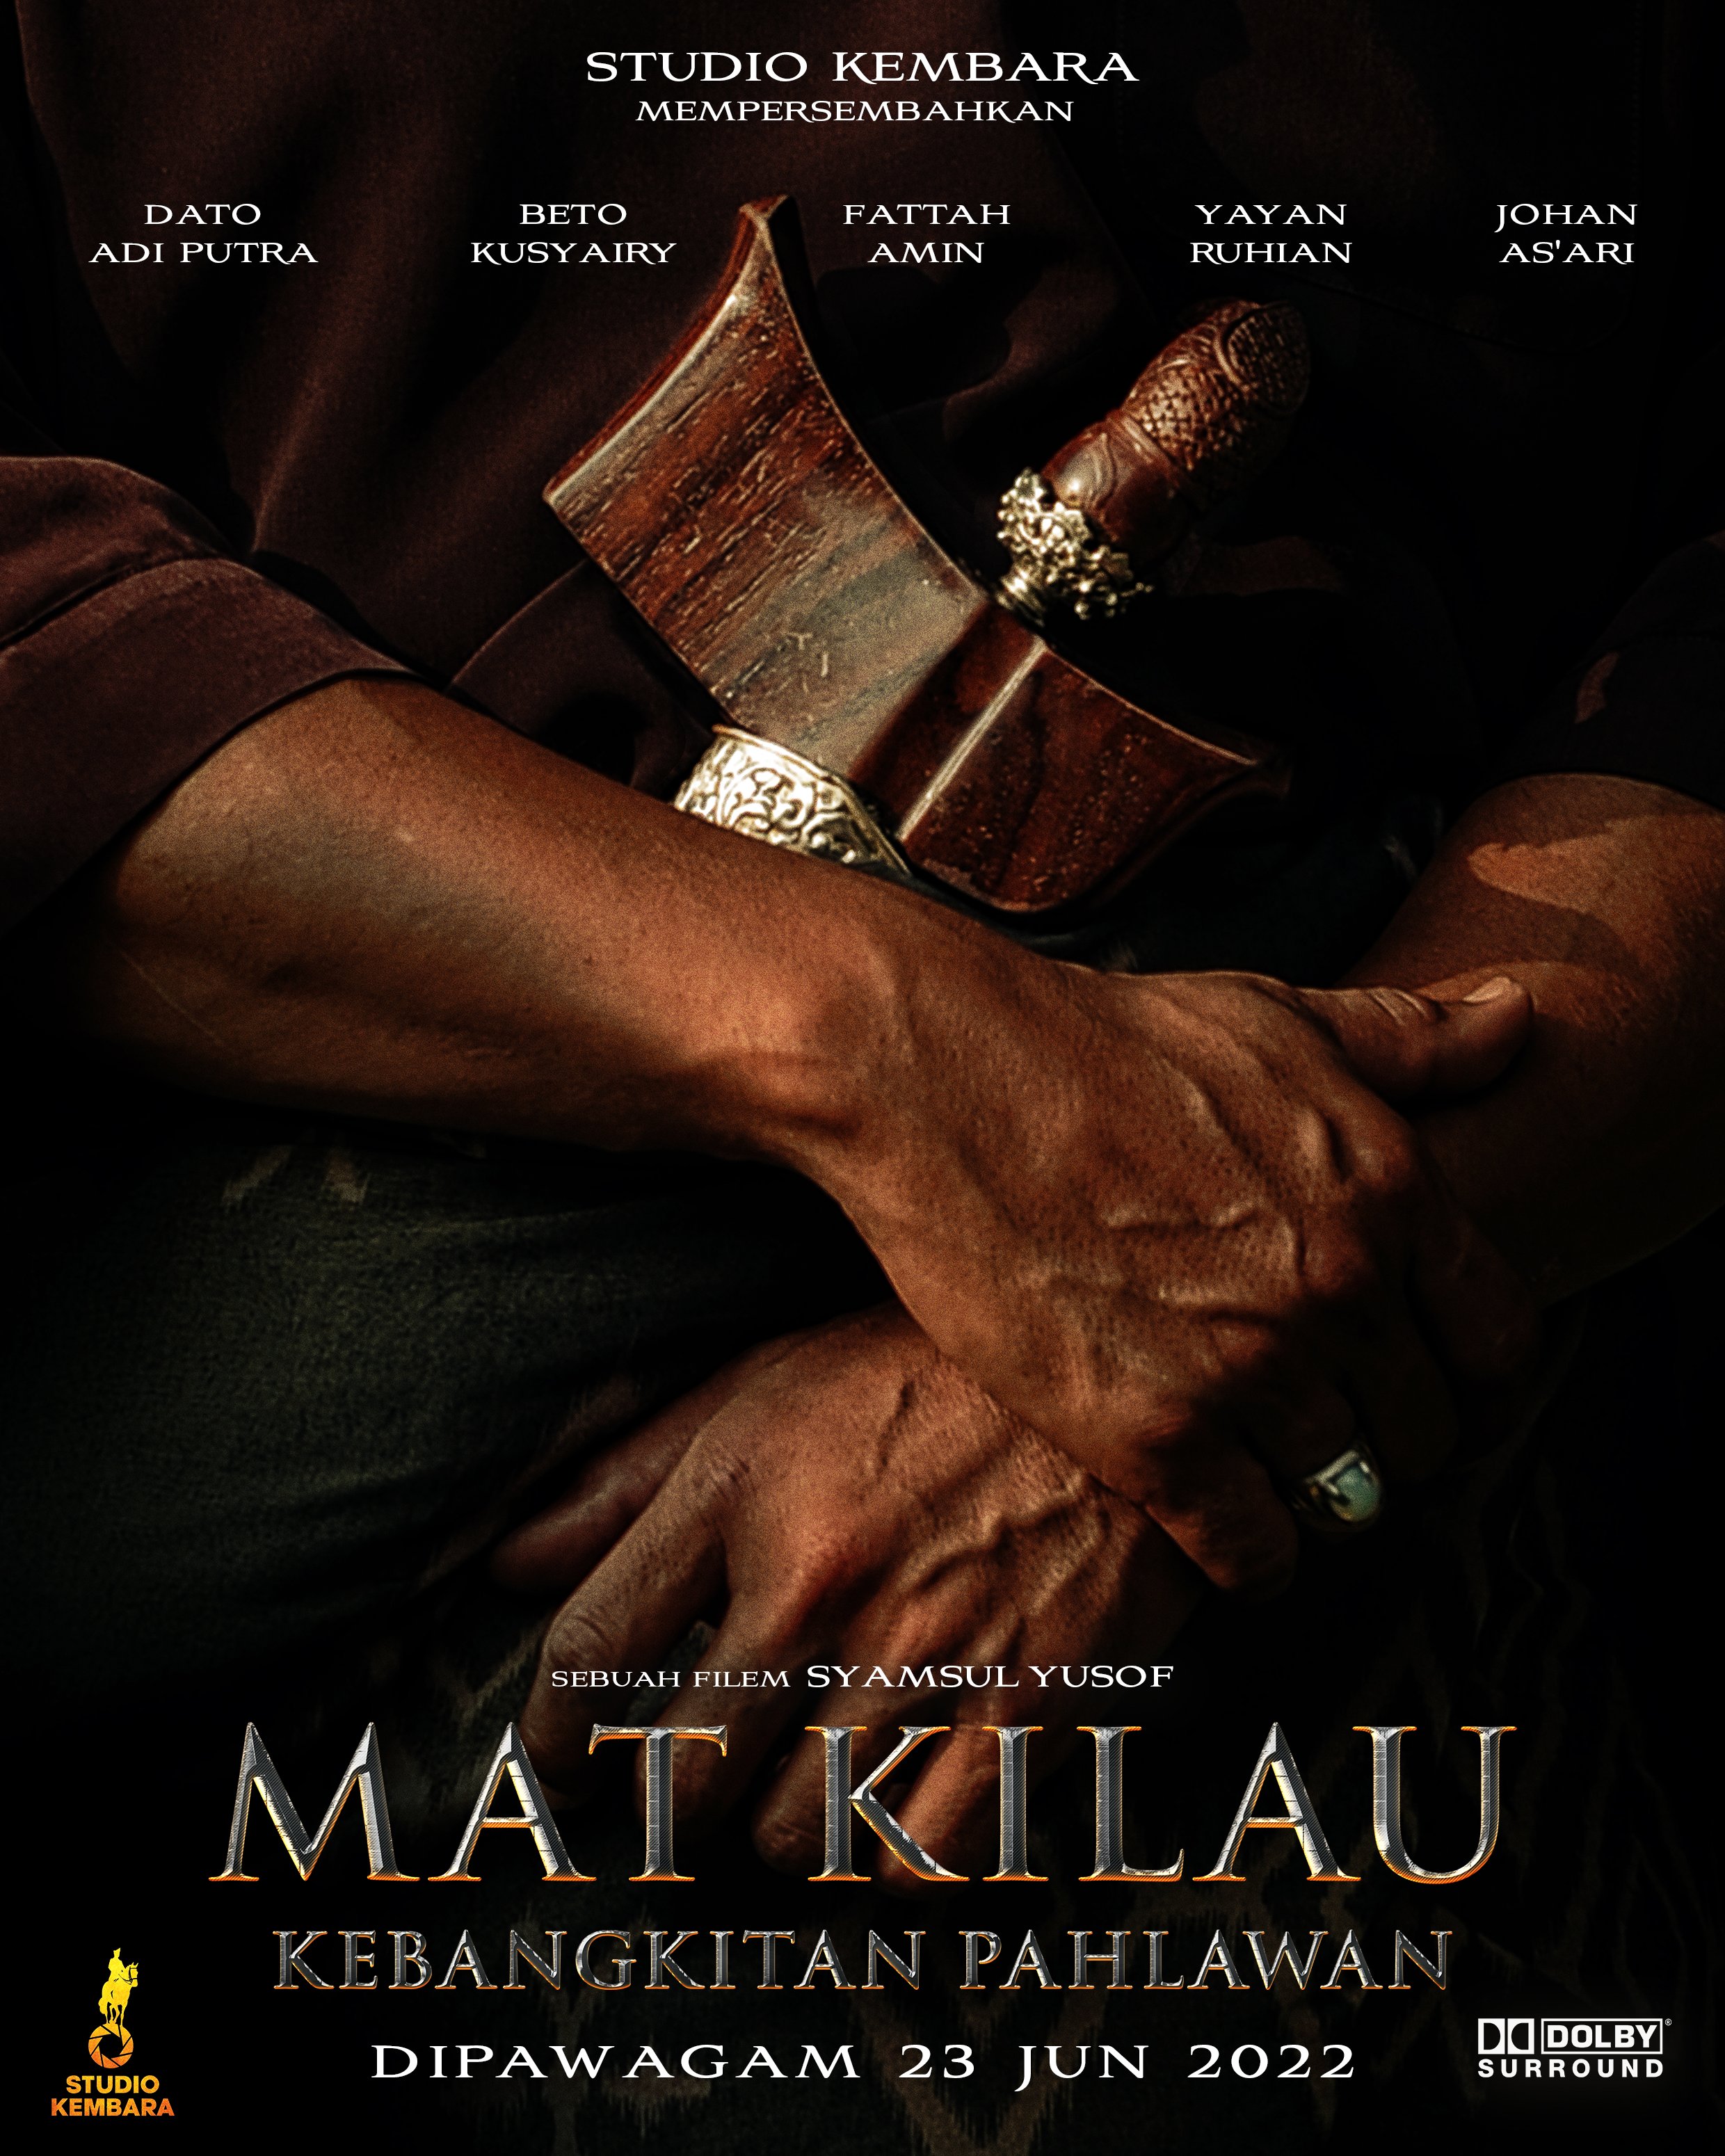 Mat Kilau (2022) มัต คีเลา นักสู้เพื่อมาเลย์